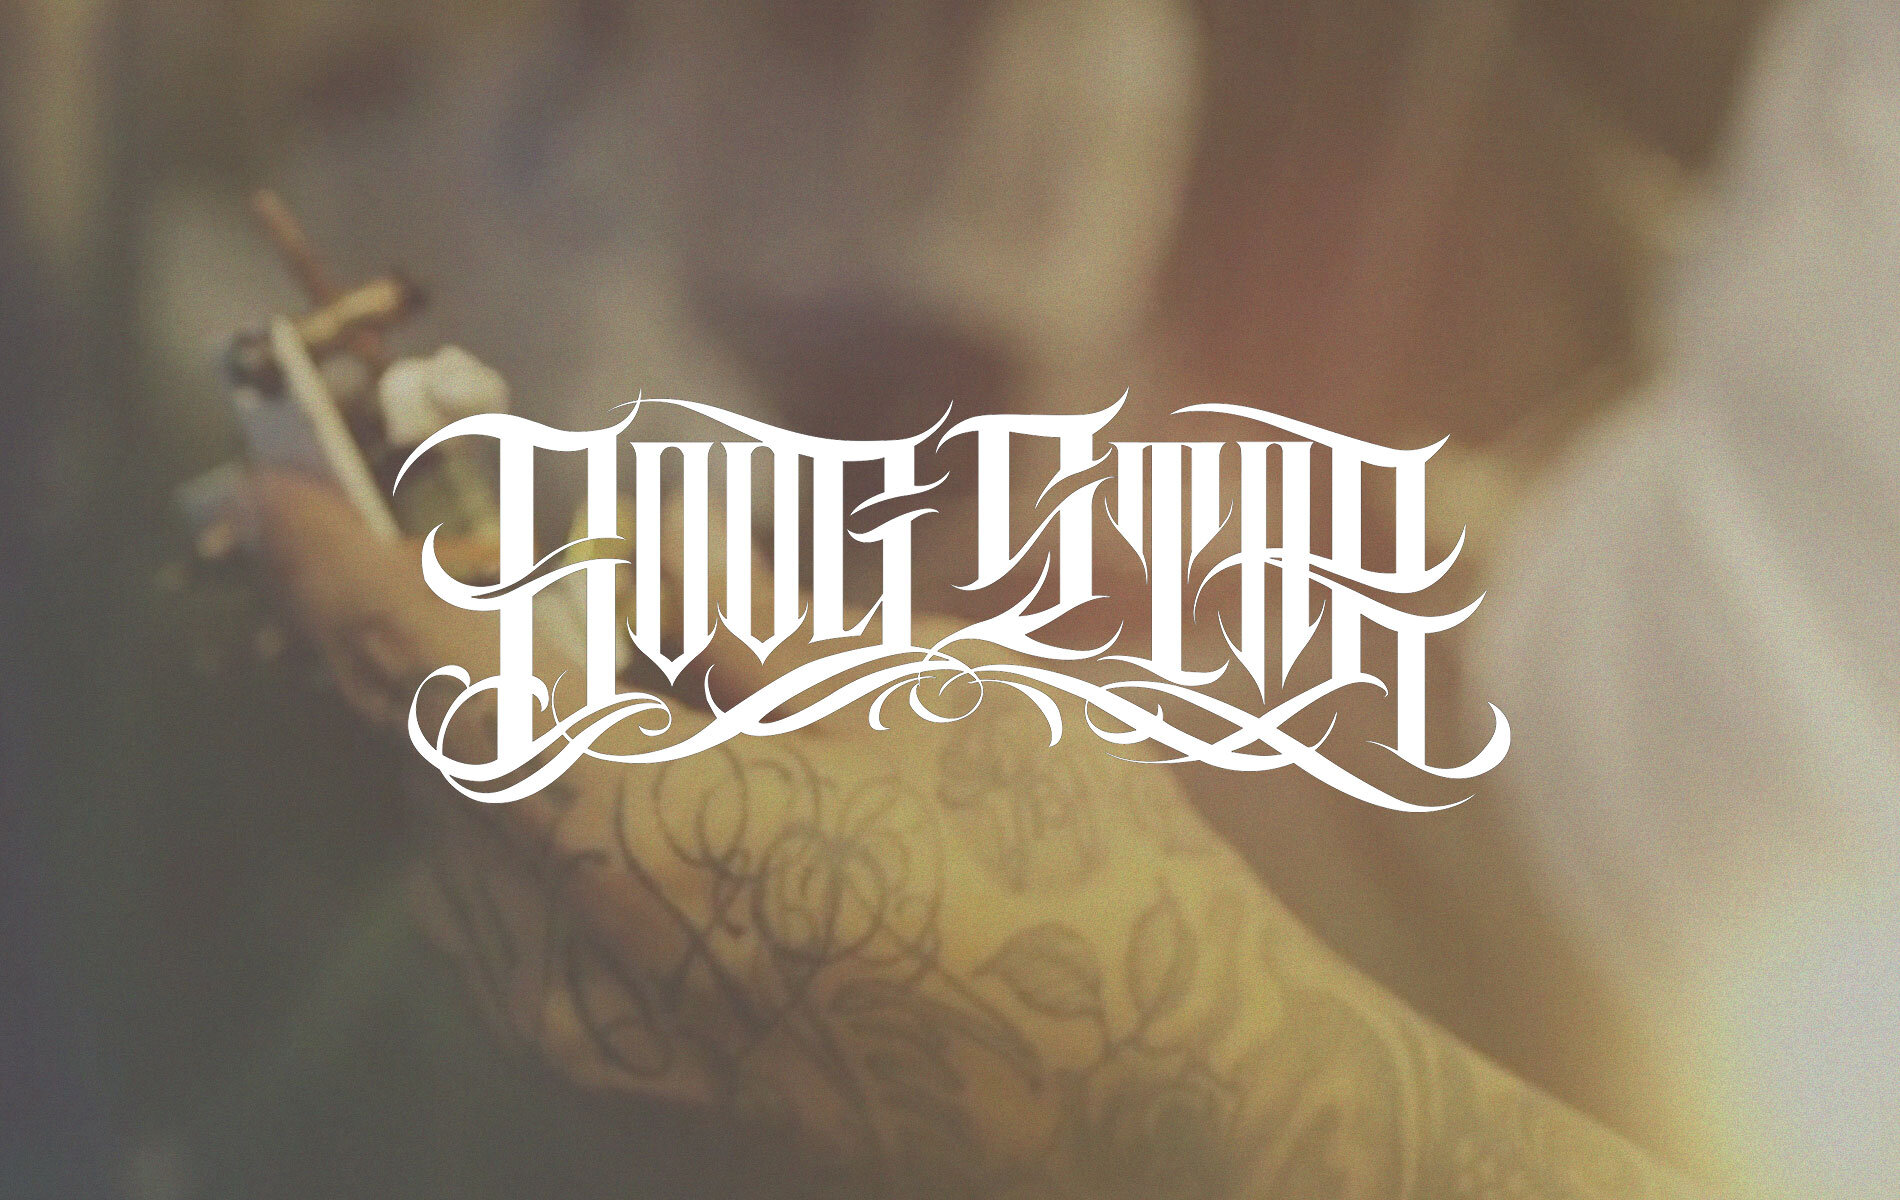 Boog Star  Leg Tattoo Time Lapse Toronto 2014  YouTube